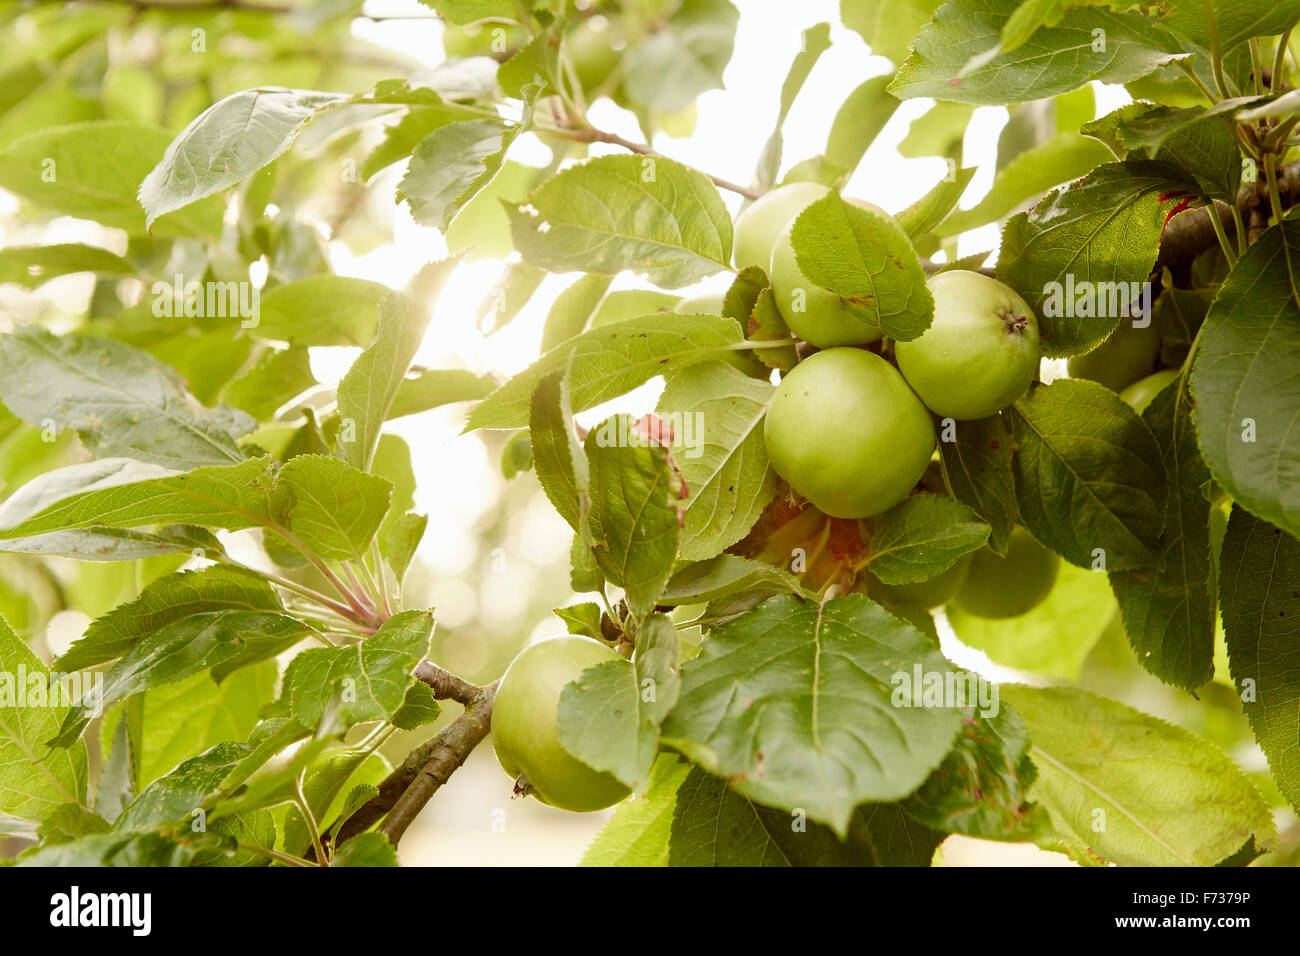 Obst, grüne Äpfel an den Ästen eines Baumes in einem Obstgarten. Stockfoto